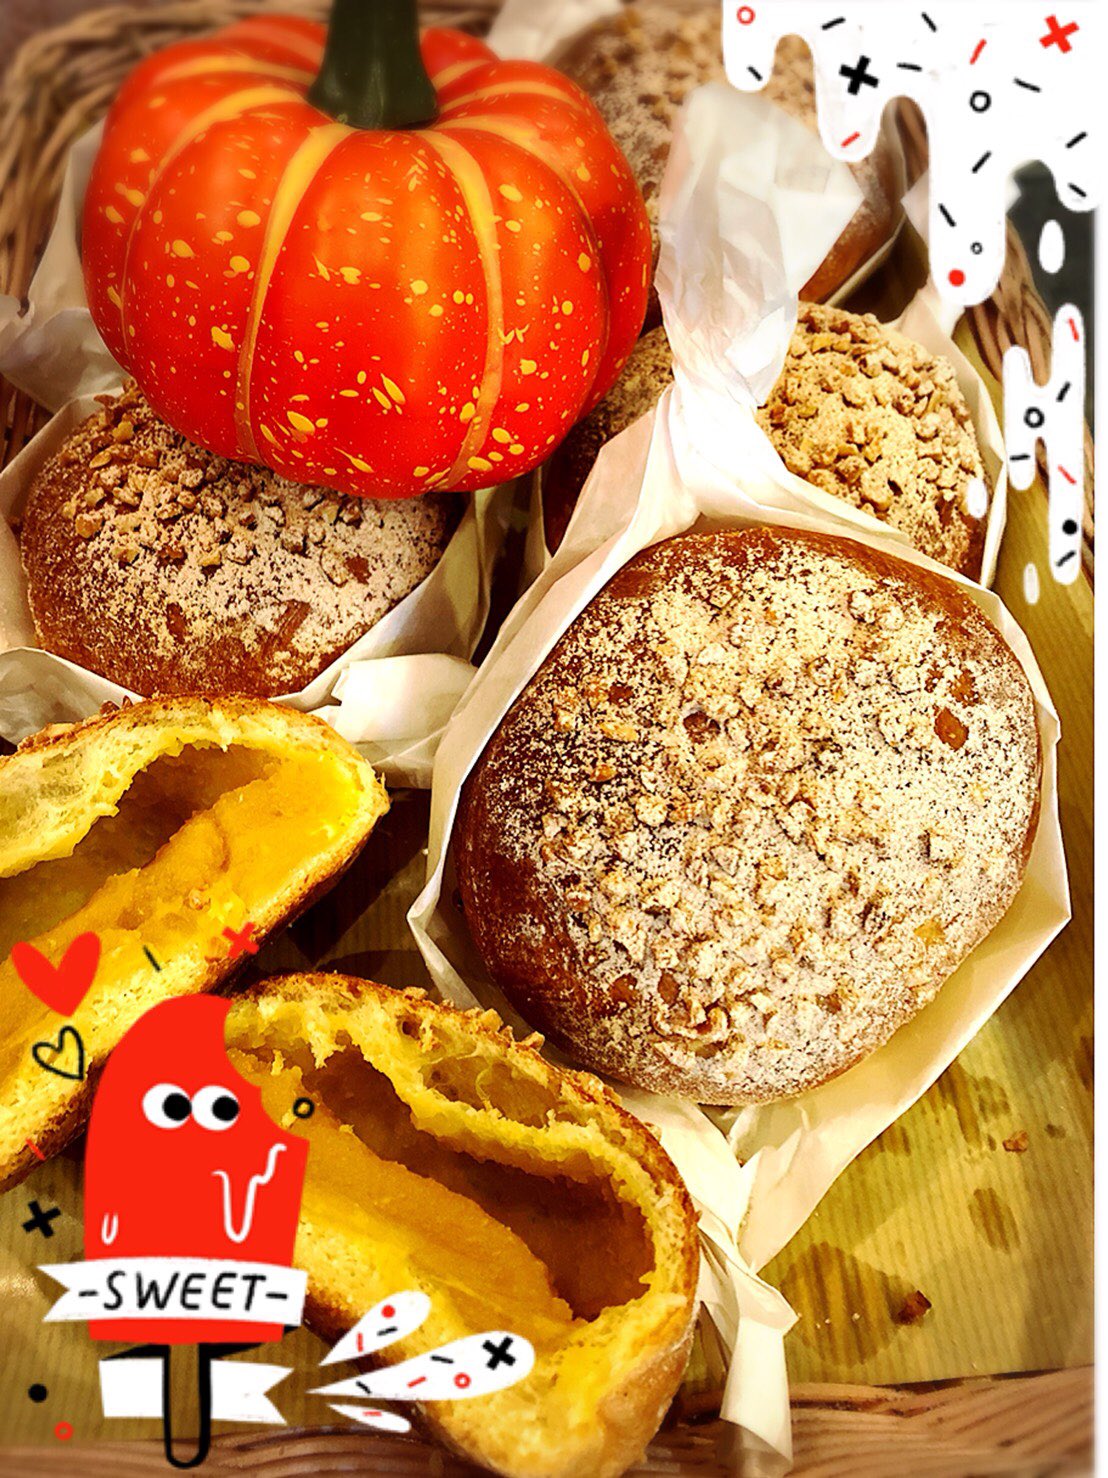 京都ベーカリーワルダー かぼちゃのパン 中にかぼちゃのフィリングが入ったシナモン風味のパンです T Co 8freadcwjd Twitter